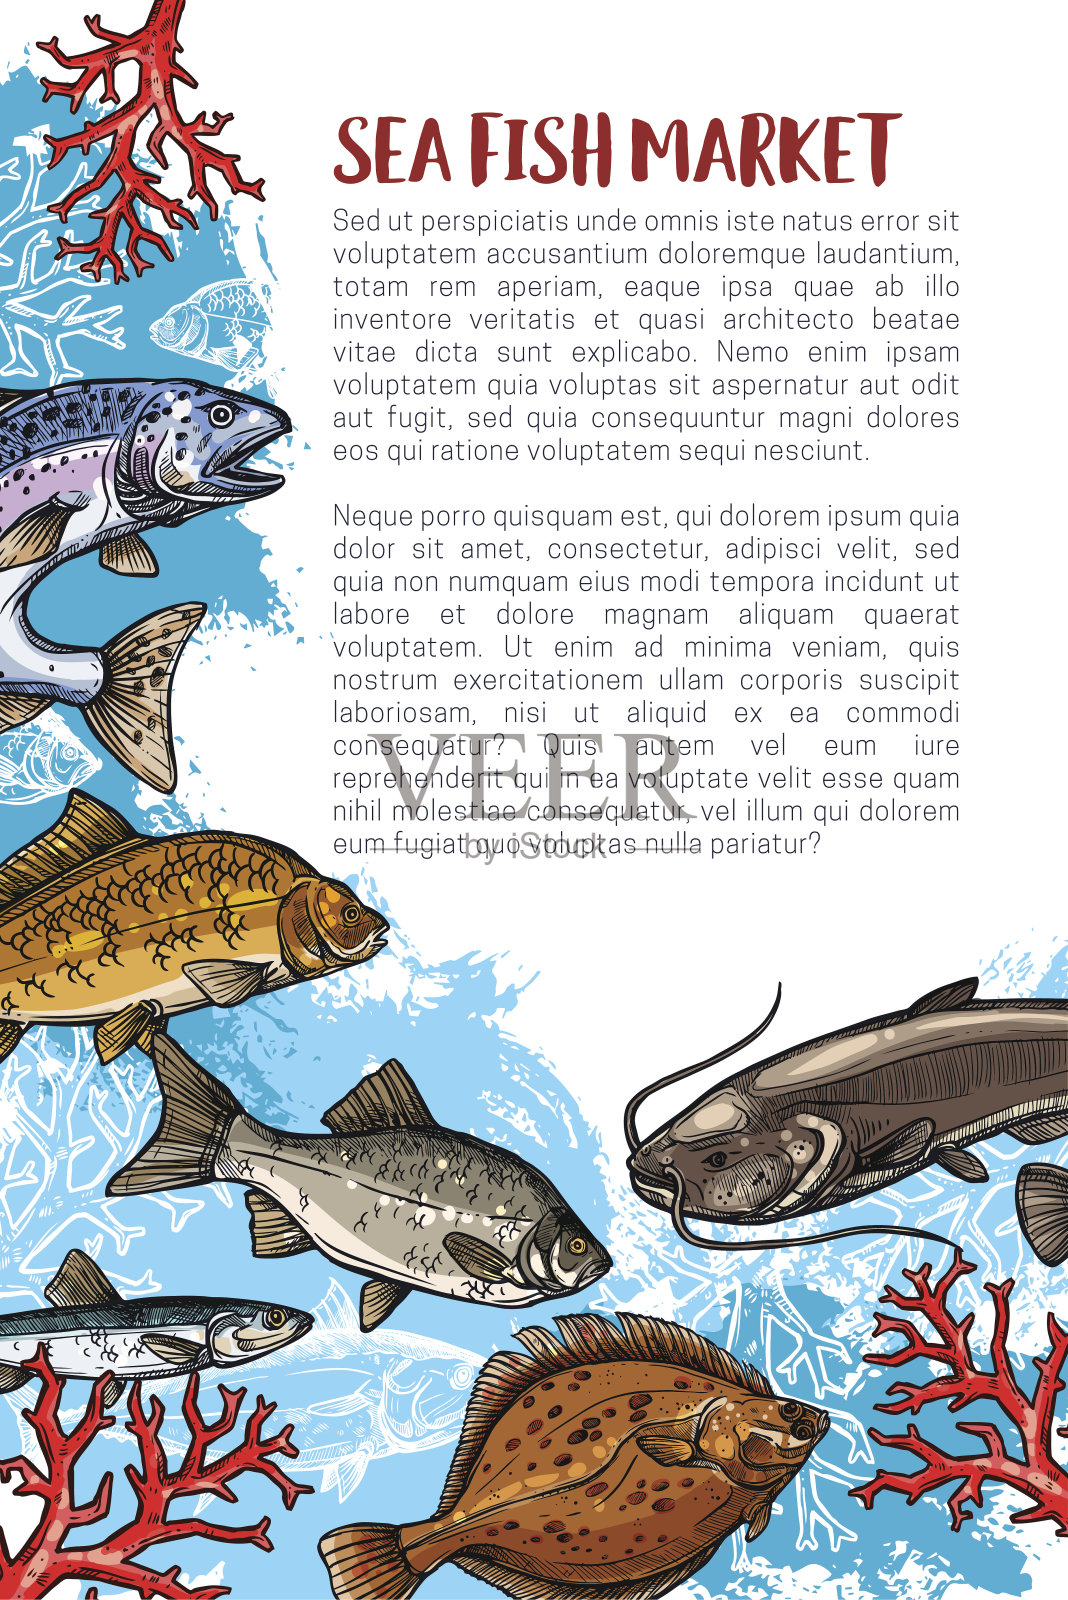 为海鲜市场制作的鱼类宣传画插画图片素材